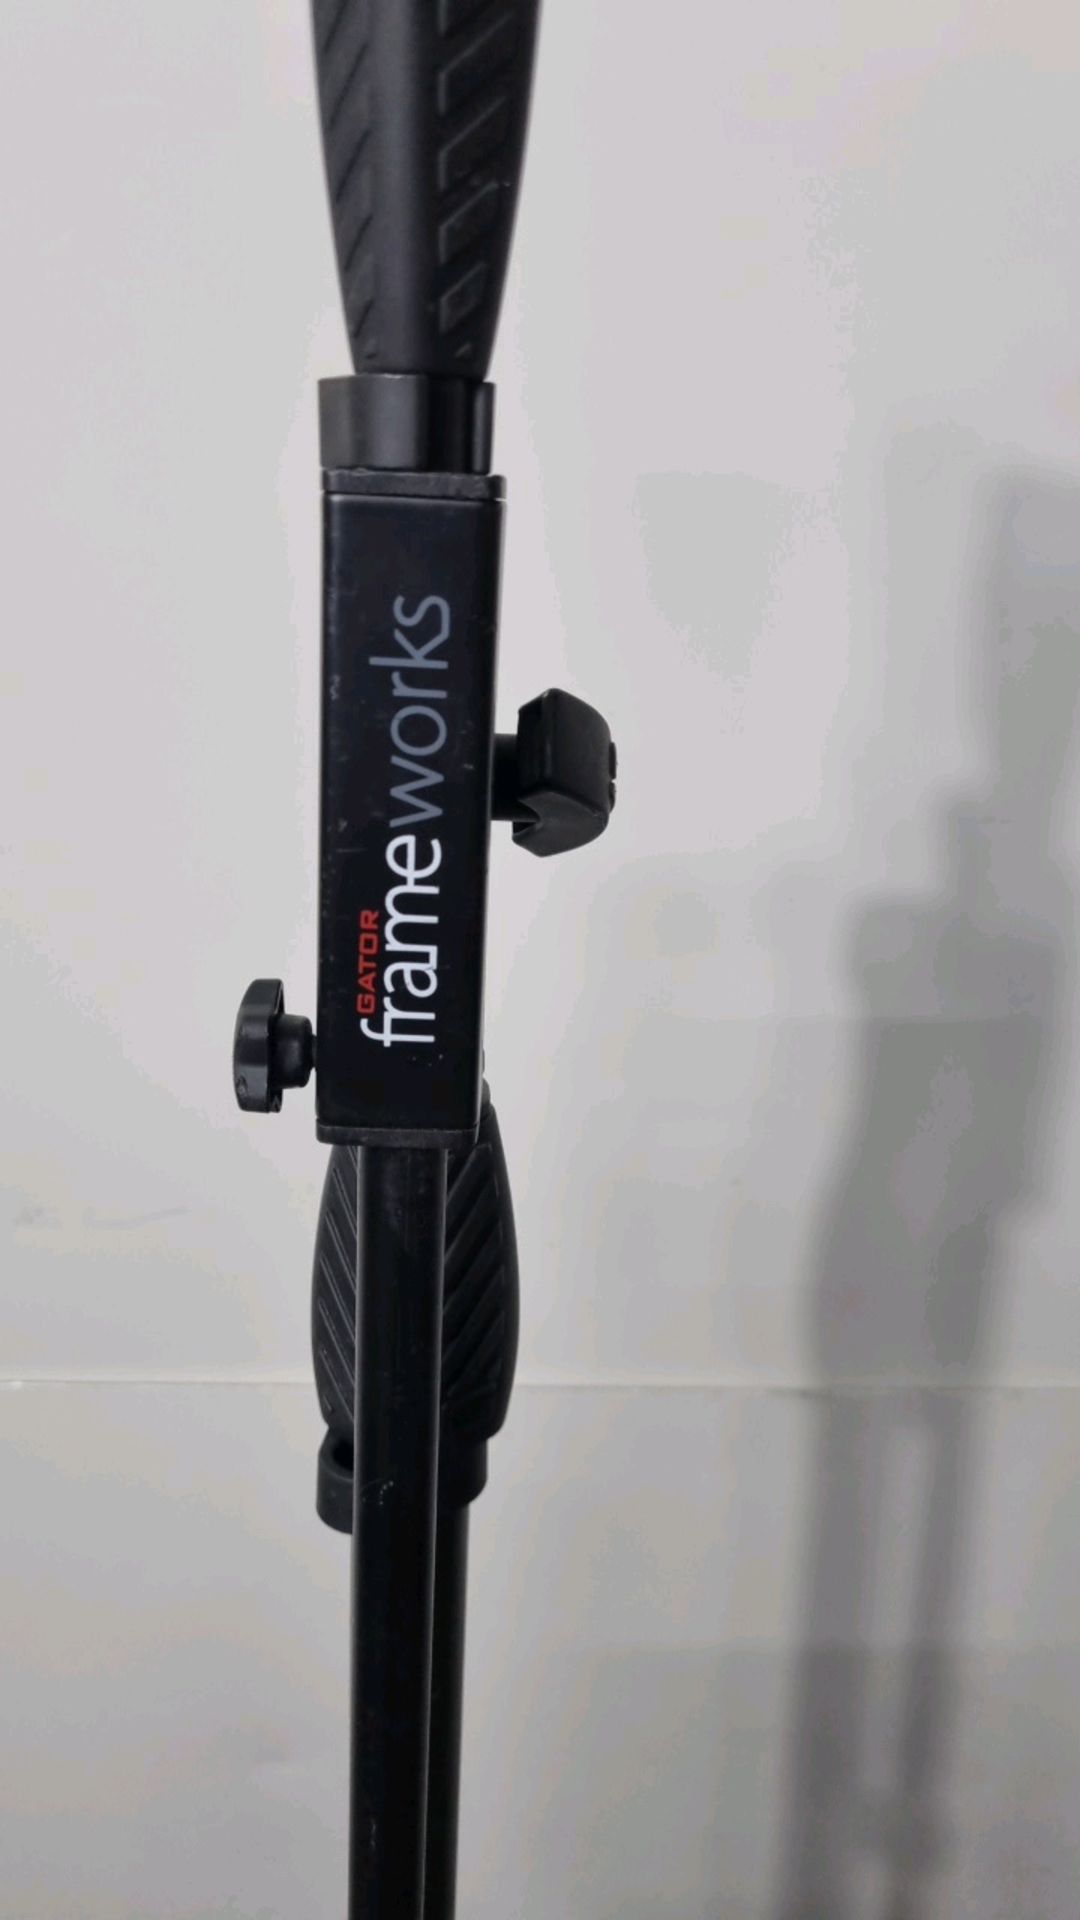 2 x Gator Frameworks Adjustable Microphone Stands In Black - Image 3 of 4